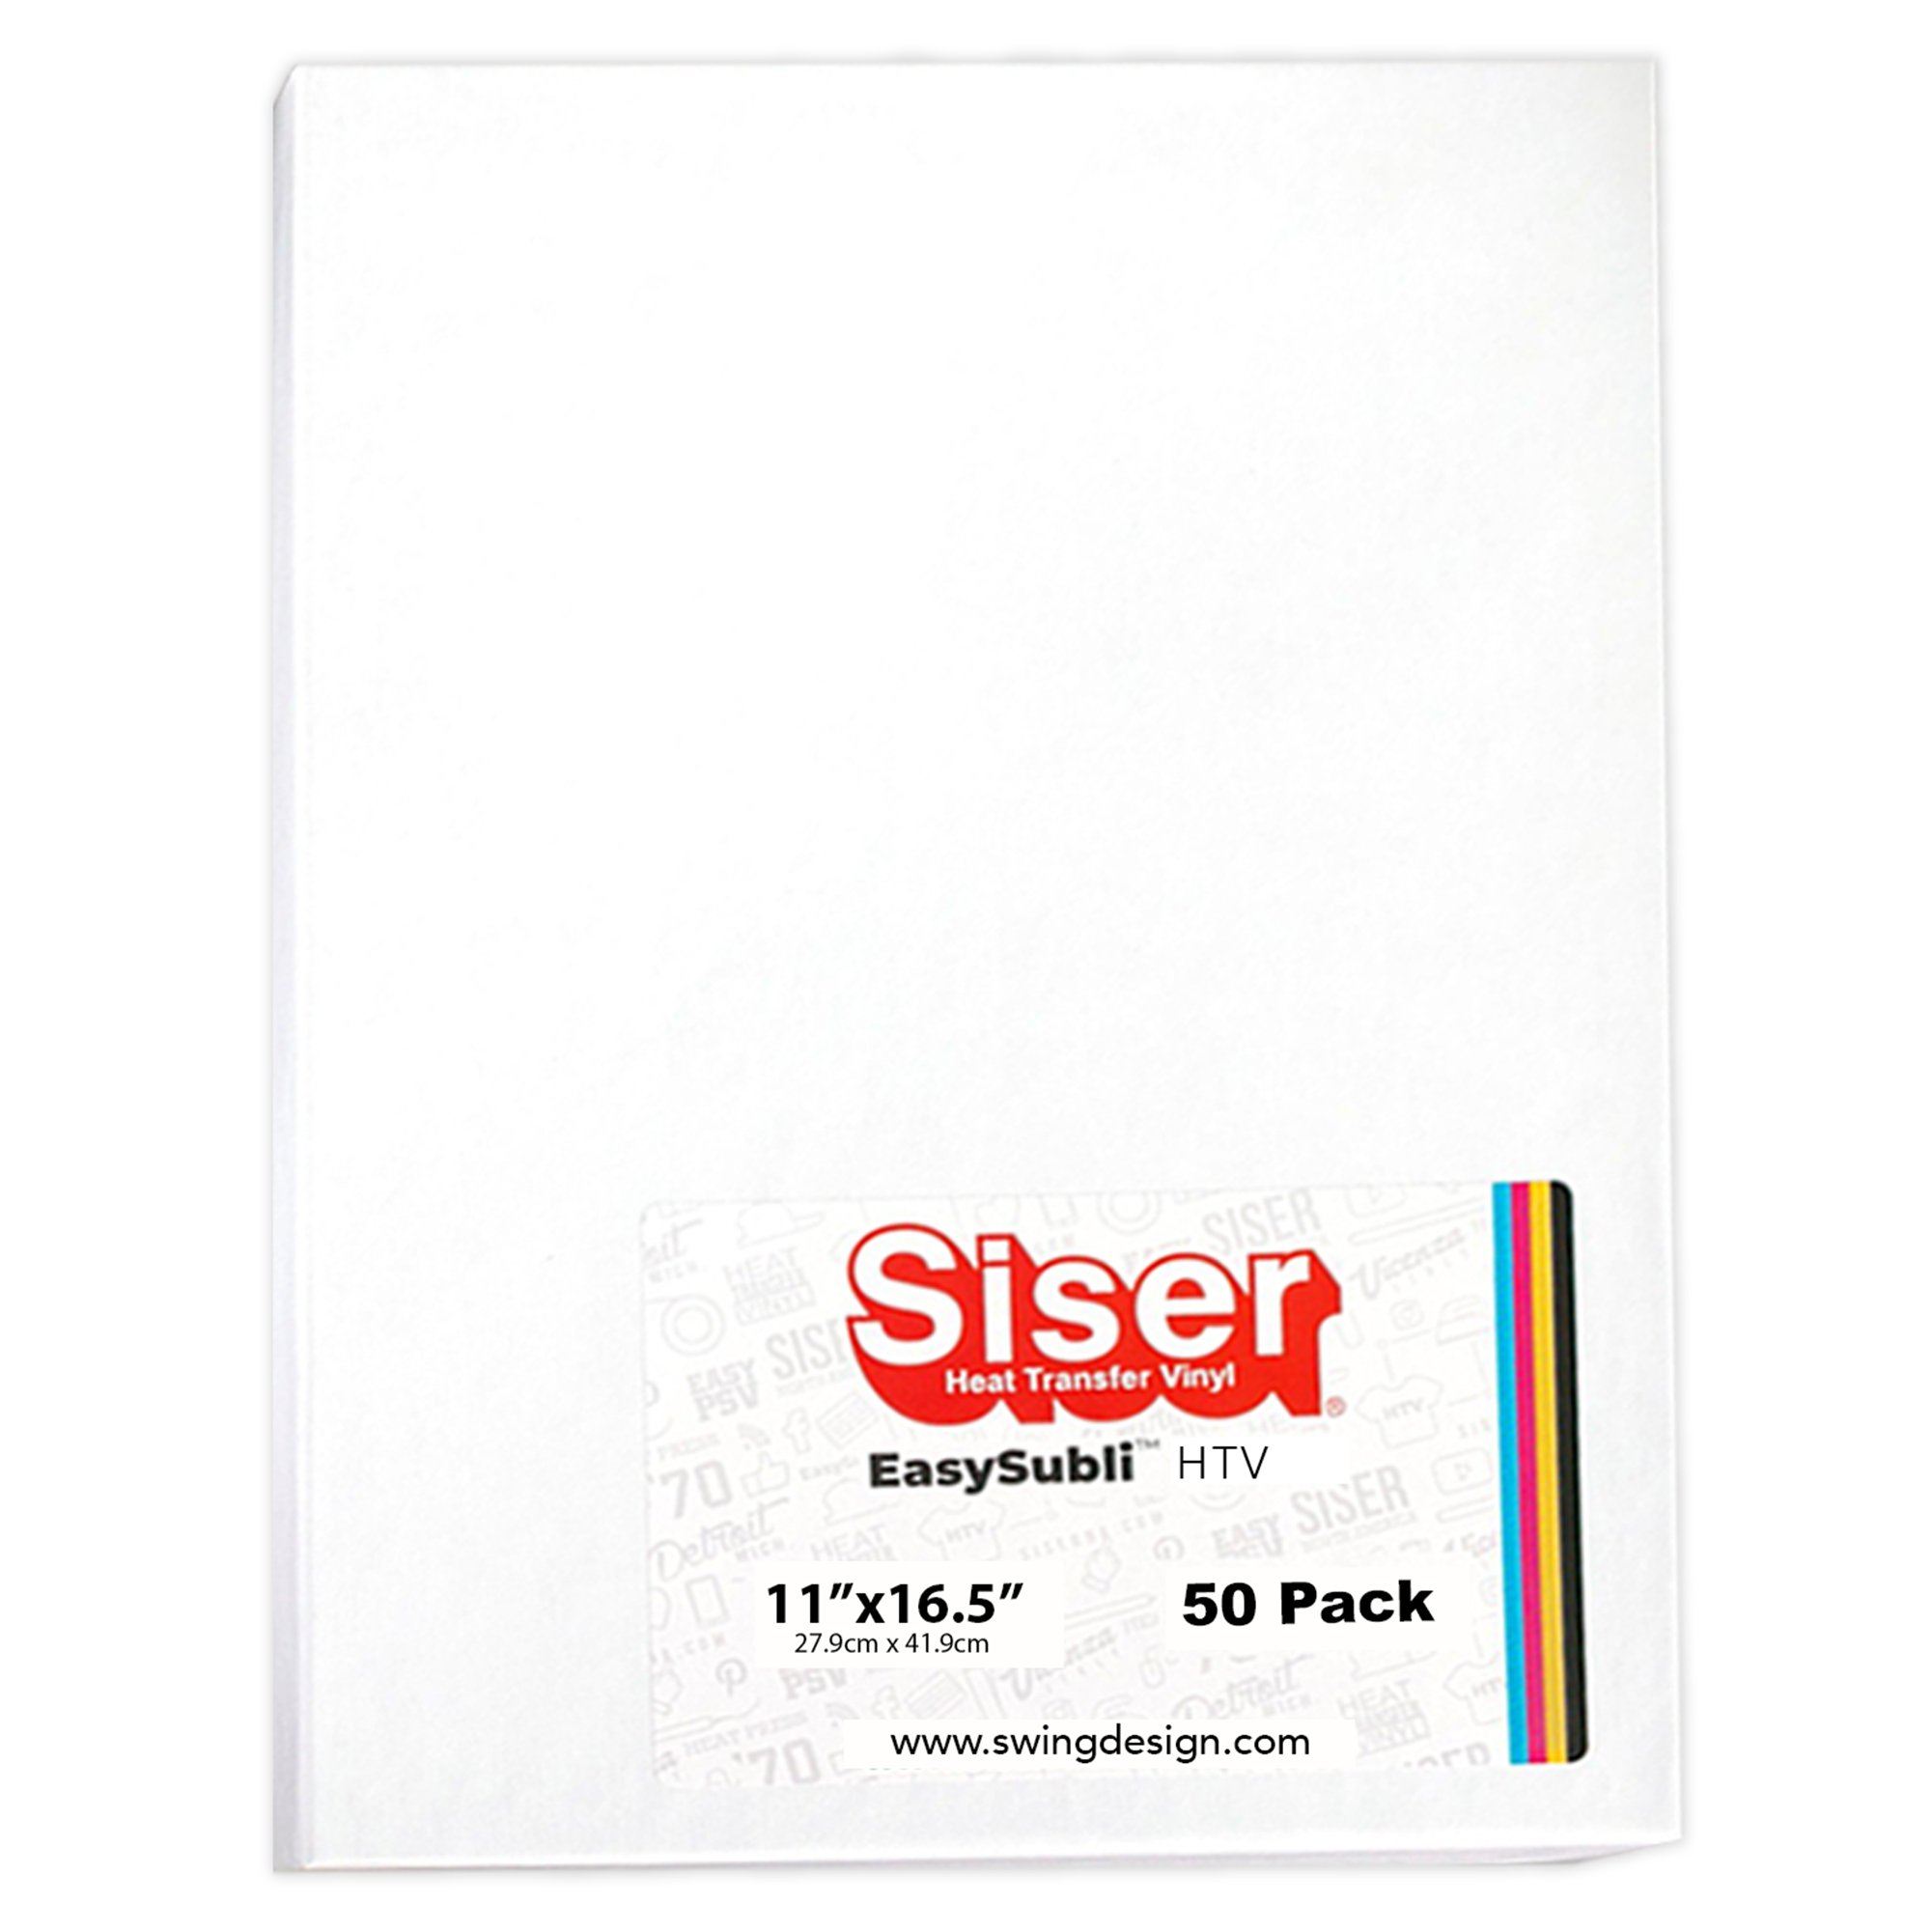 Siser EasySubli Sublimation Heat Transfer Vinyl 11 inch x 16.5 inch - 50 Pack